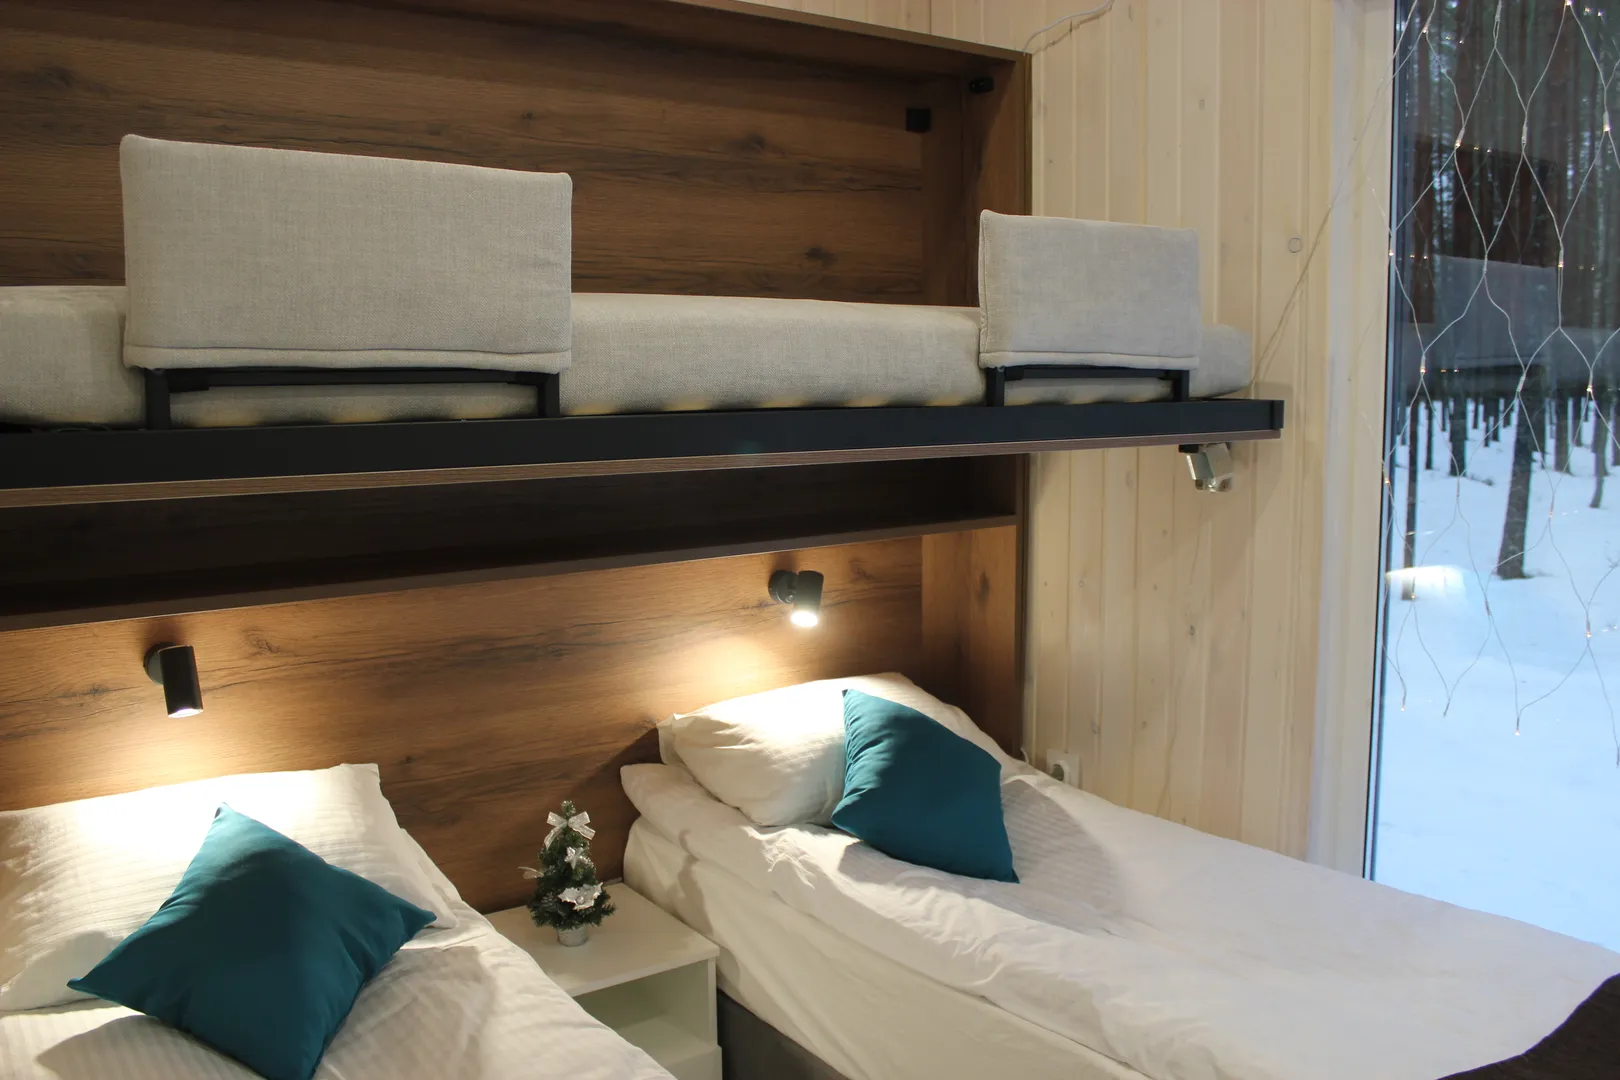 Кровати-трансформеры двуспальные или раздельные по желанию гостей с третьим откидным спальным местом